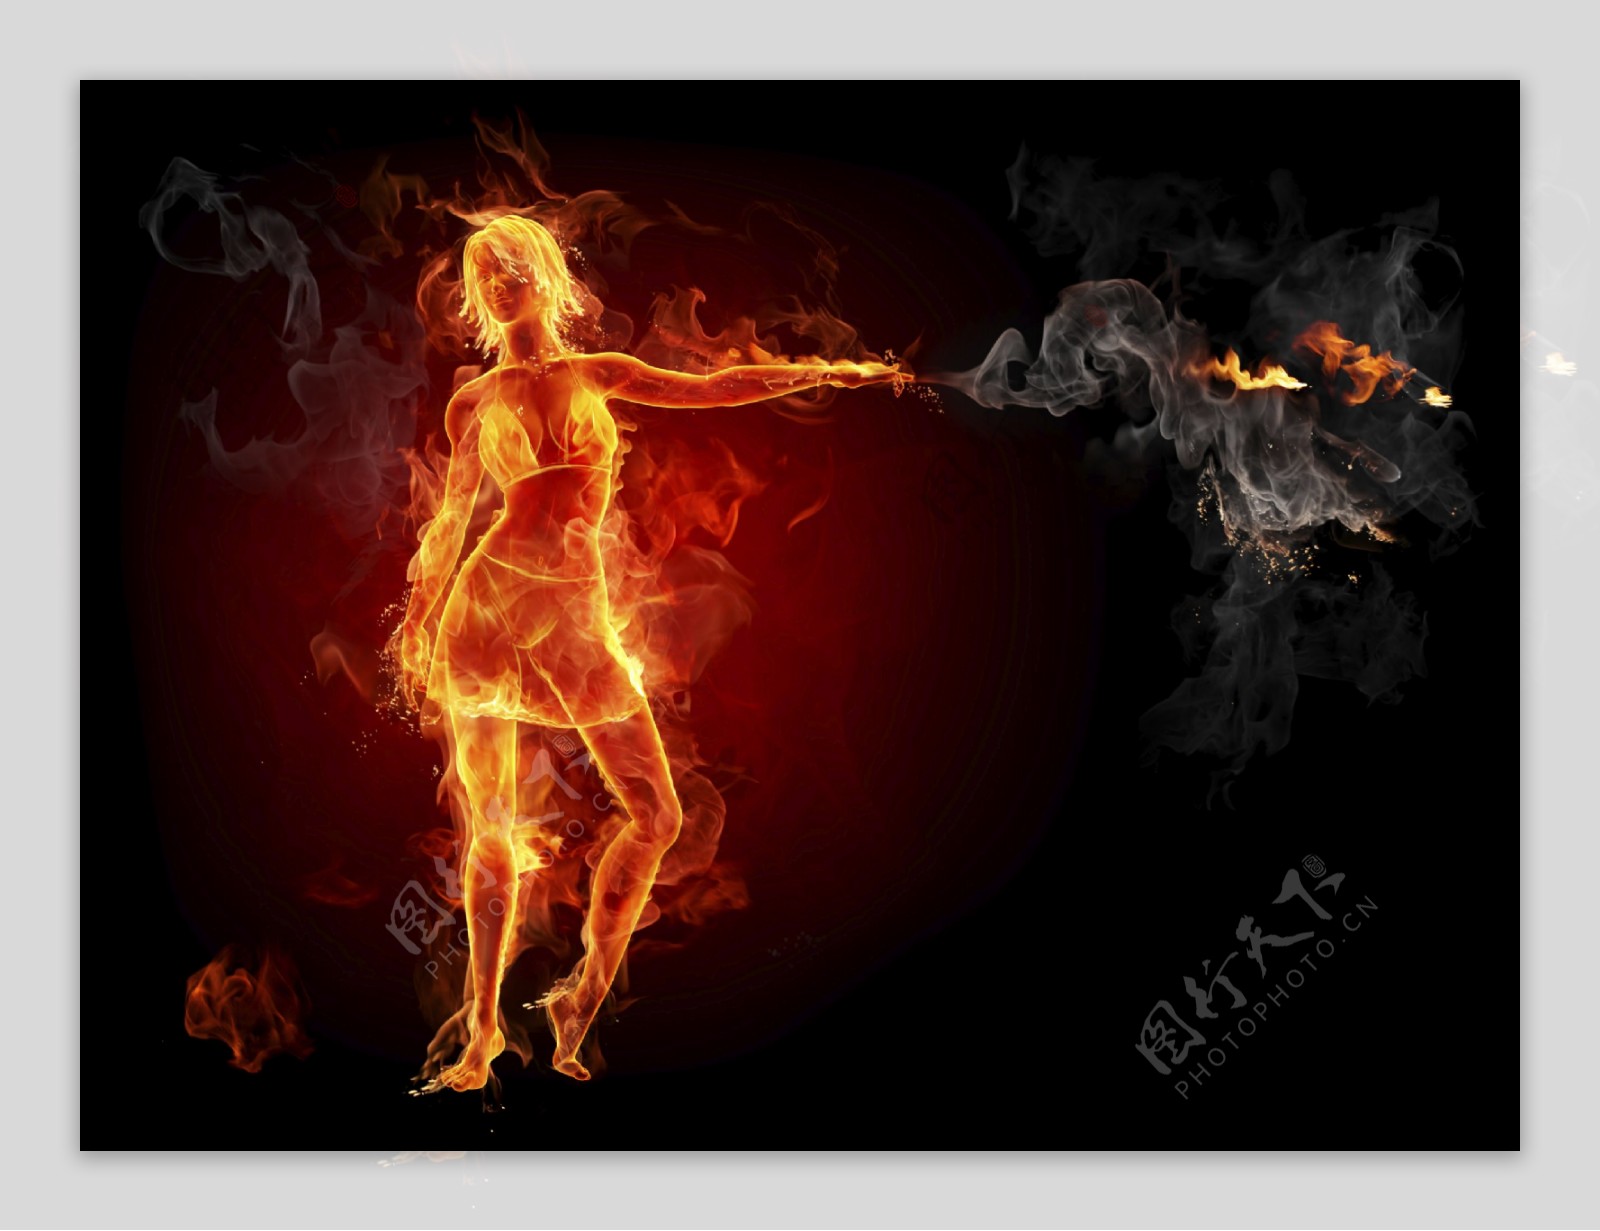 高清创意火焰美女图片下载燃烧火焰烈火火苗火焰美女图片素材大全